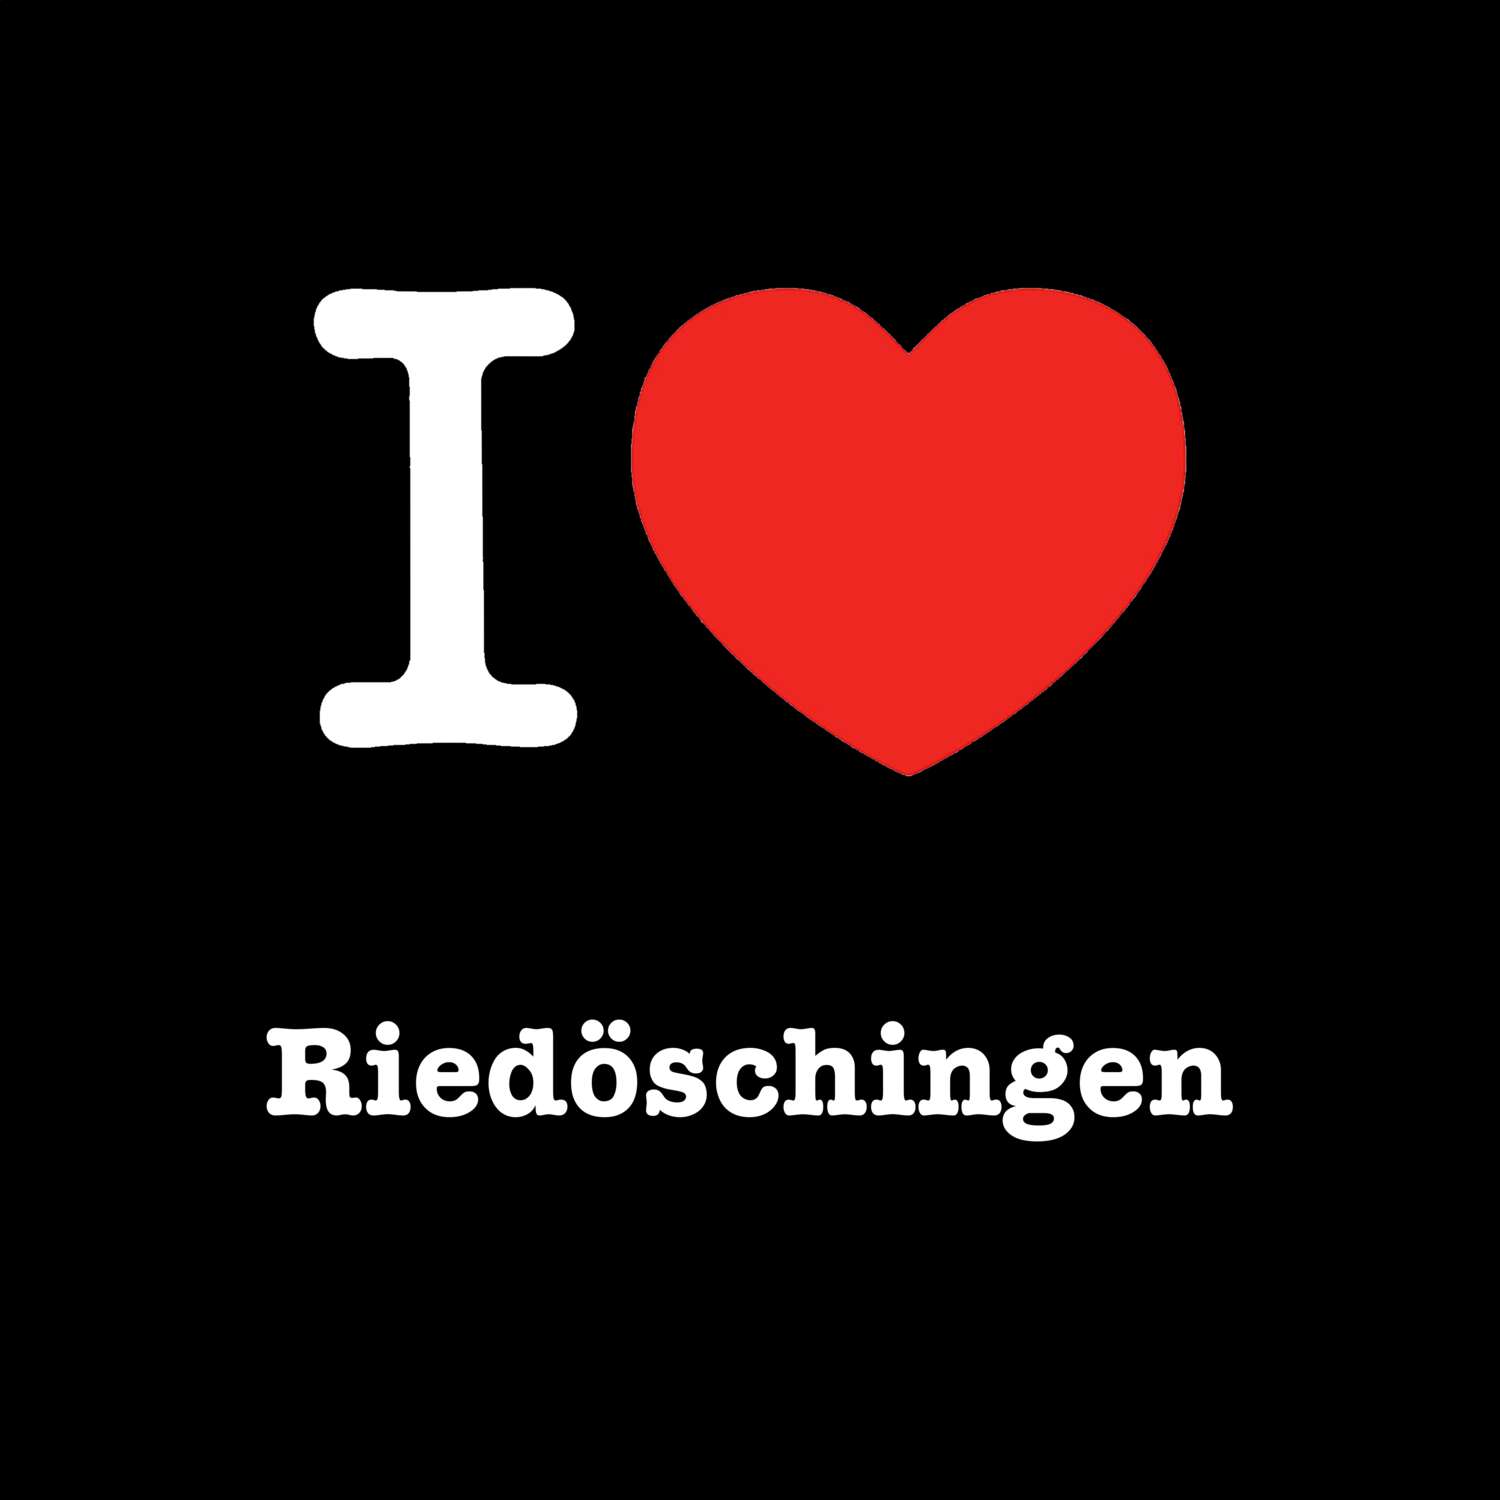 Riedöschingen T-Shirt »I love«